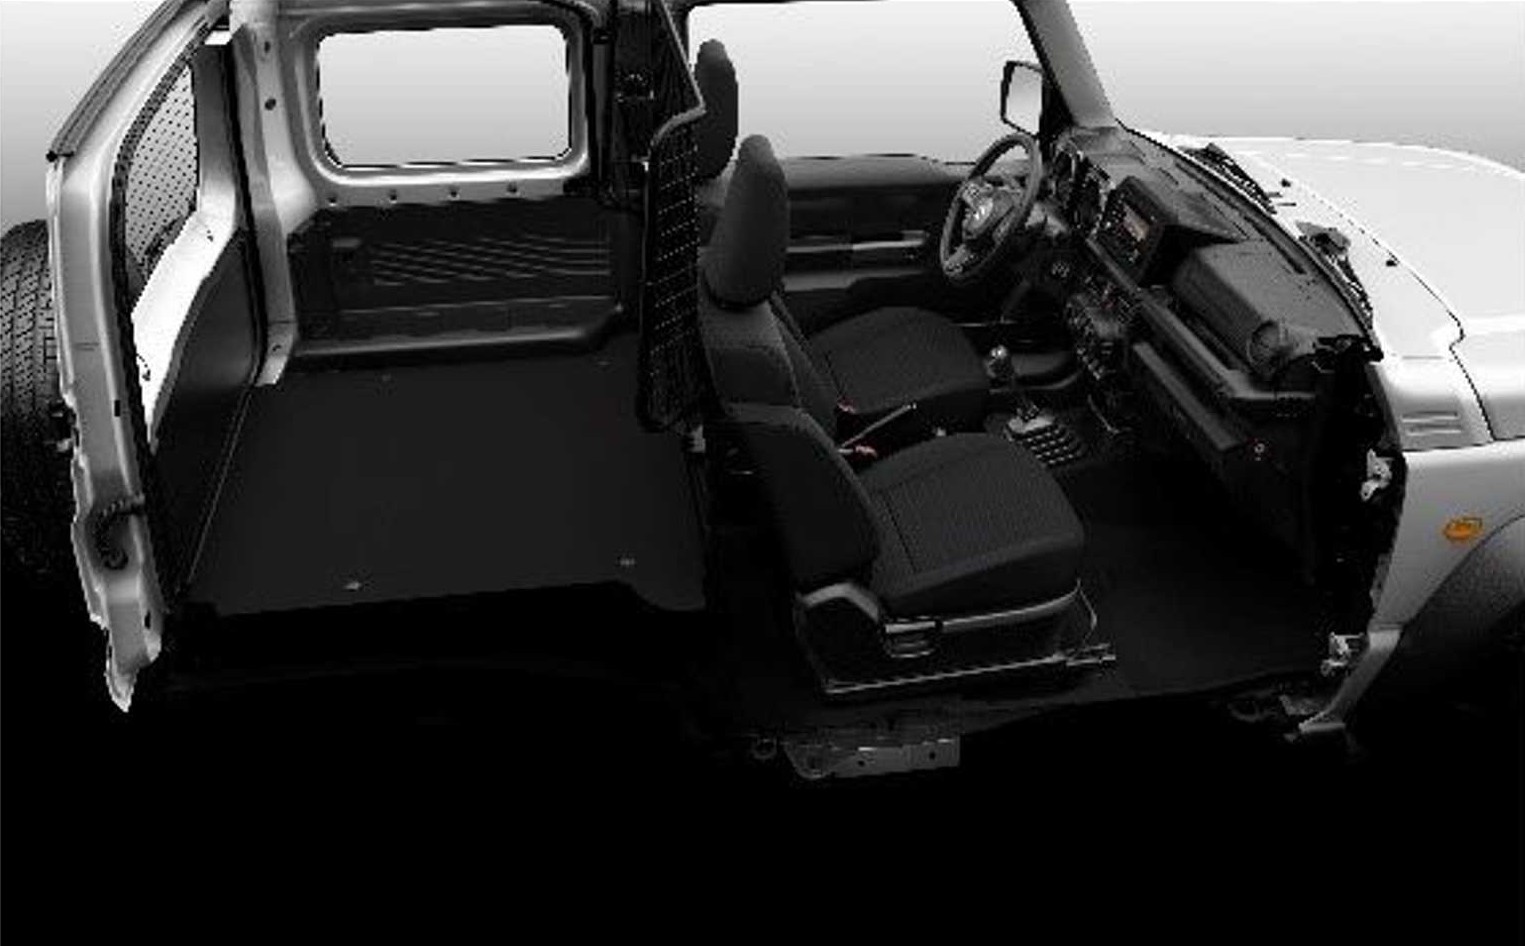 ジムニーロング 5ドア 22年発売予測 派生モデル追加の動きあり 自動車リサーチ